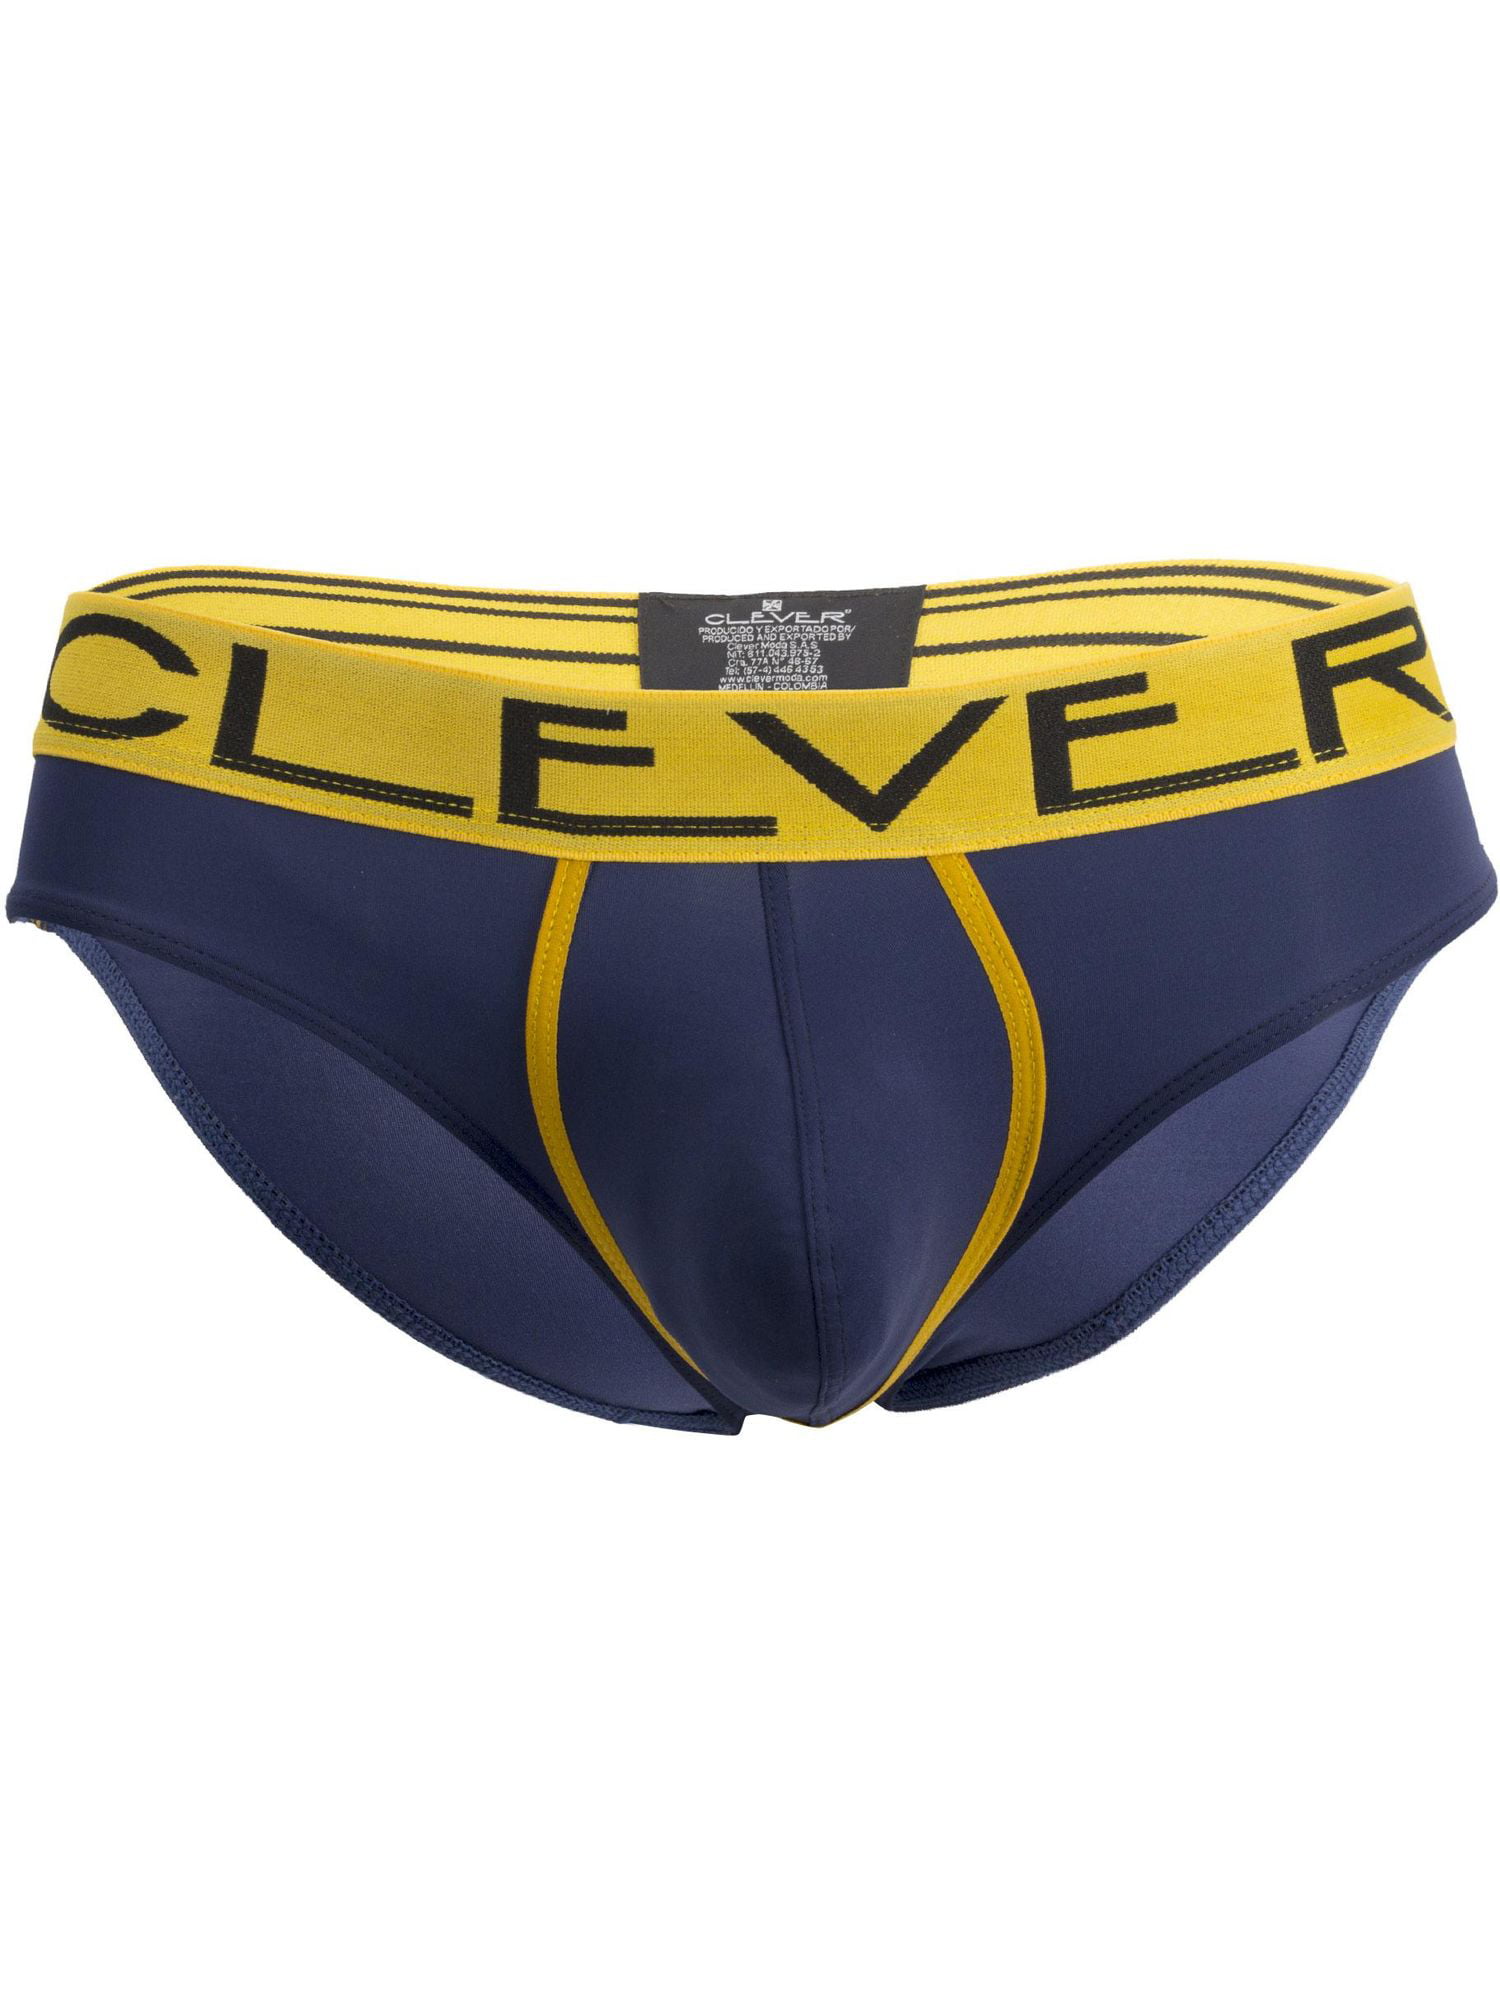 Mens Underwear Clever 5396 Wonderful Latin Briefs Underwear Clothing ...